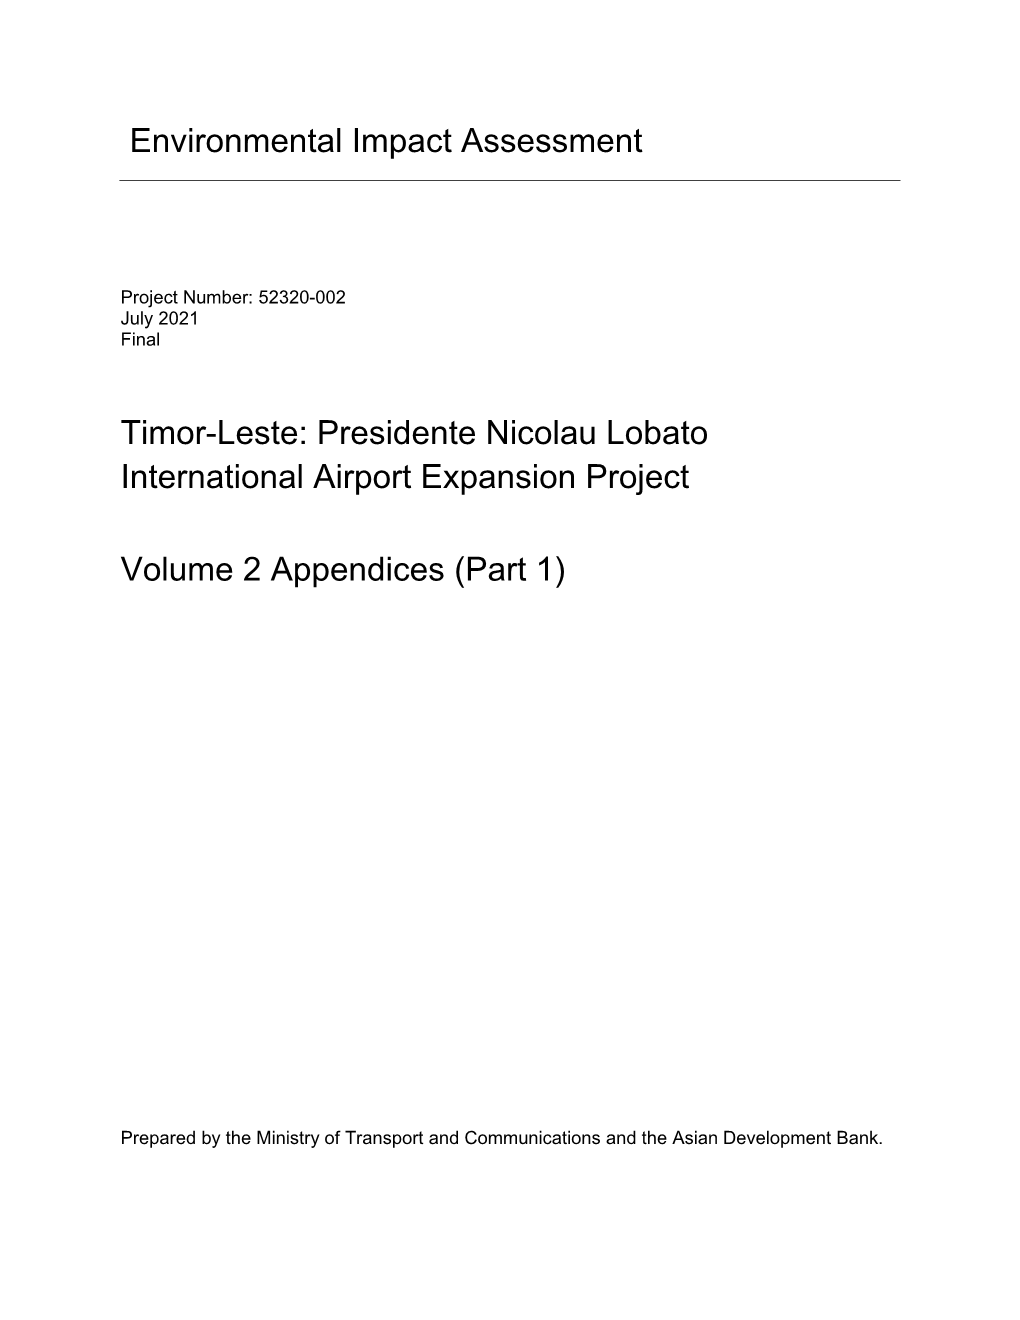 Environmental Impact Assessment Timor-Leste: Presidente Nicolau